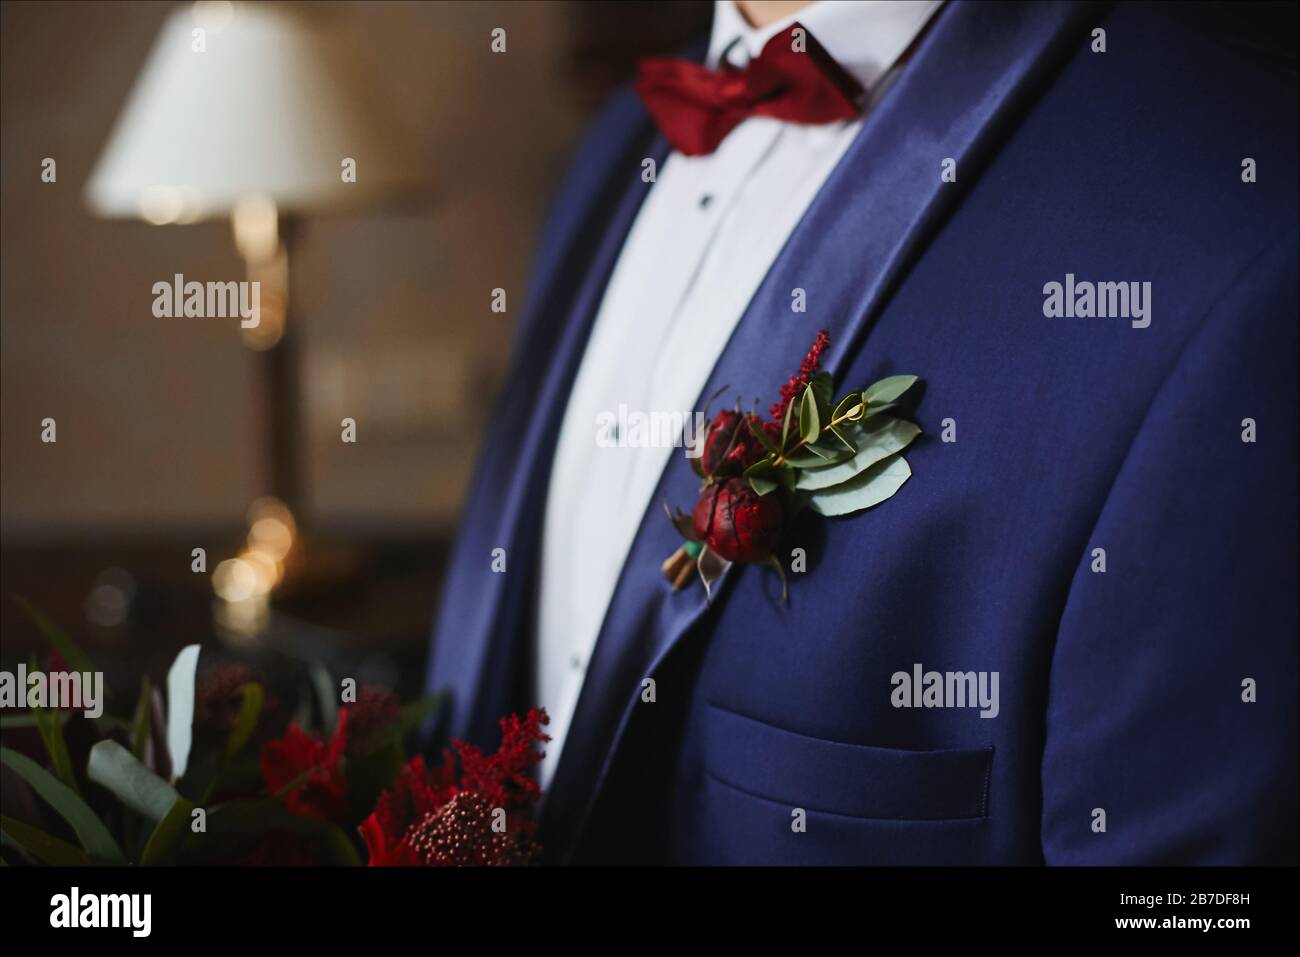 Robe élégante en costume bleu avec noeud papillon rouge et boutonnière vert- rouge sur sa veste - détails de mariage Photo Stock - Alamy